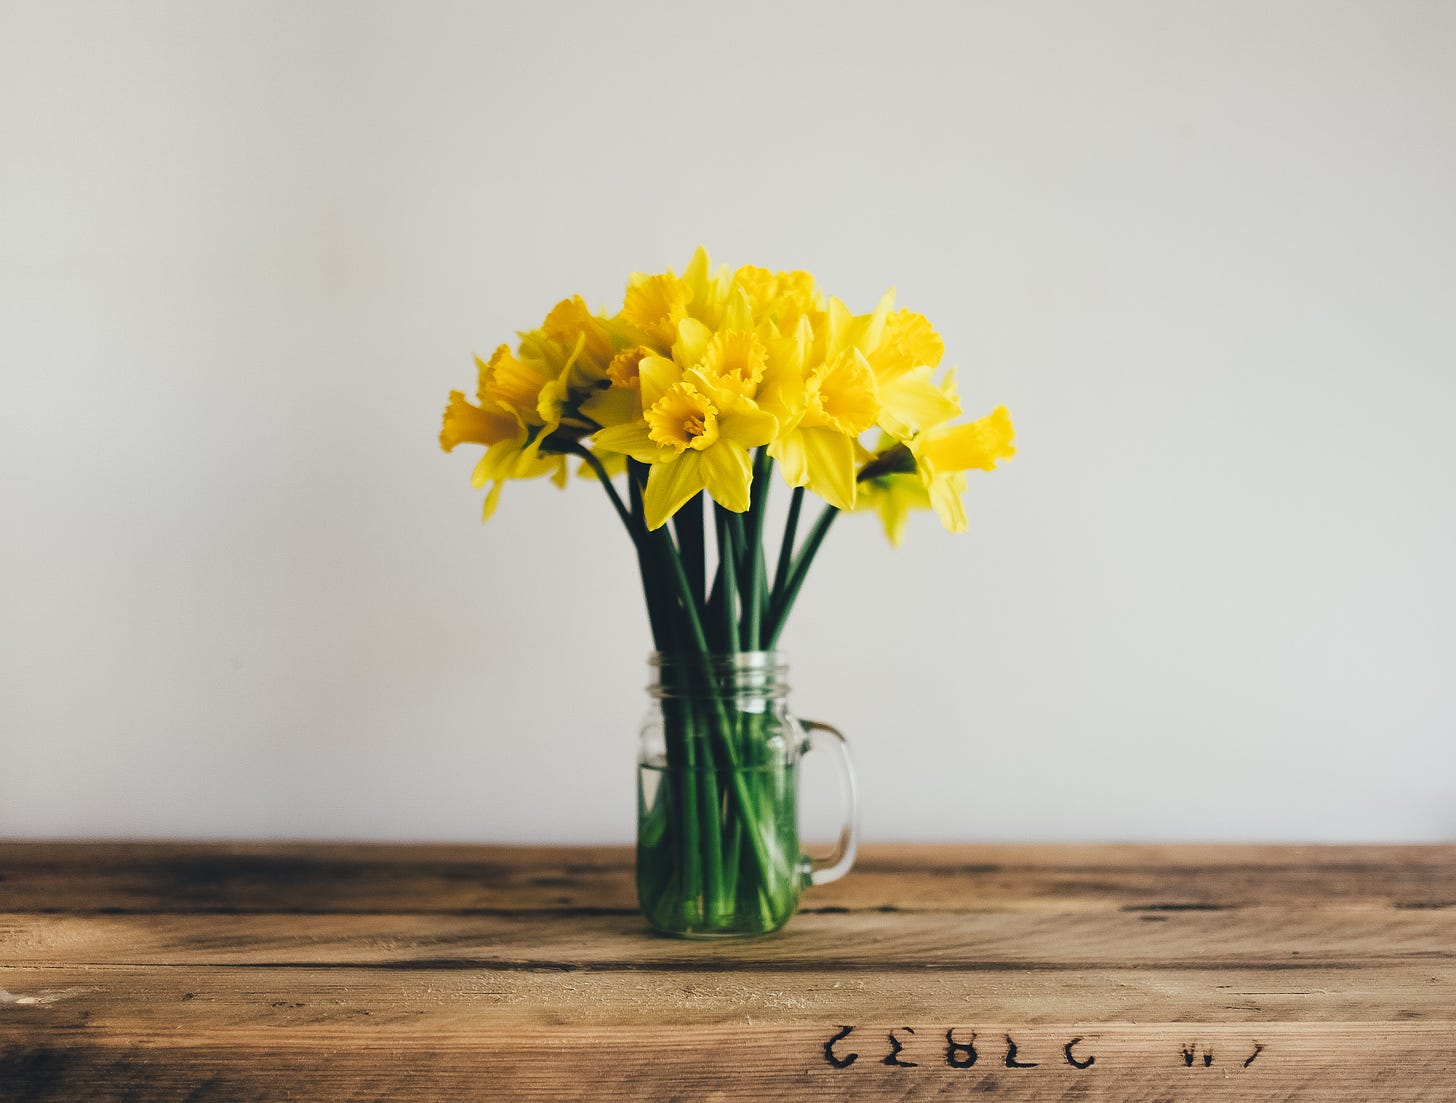 Photo of a vase of daffodils by Annie Spratt.